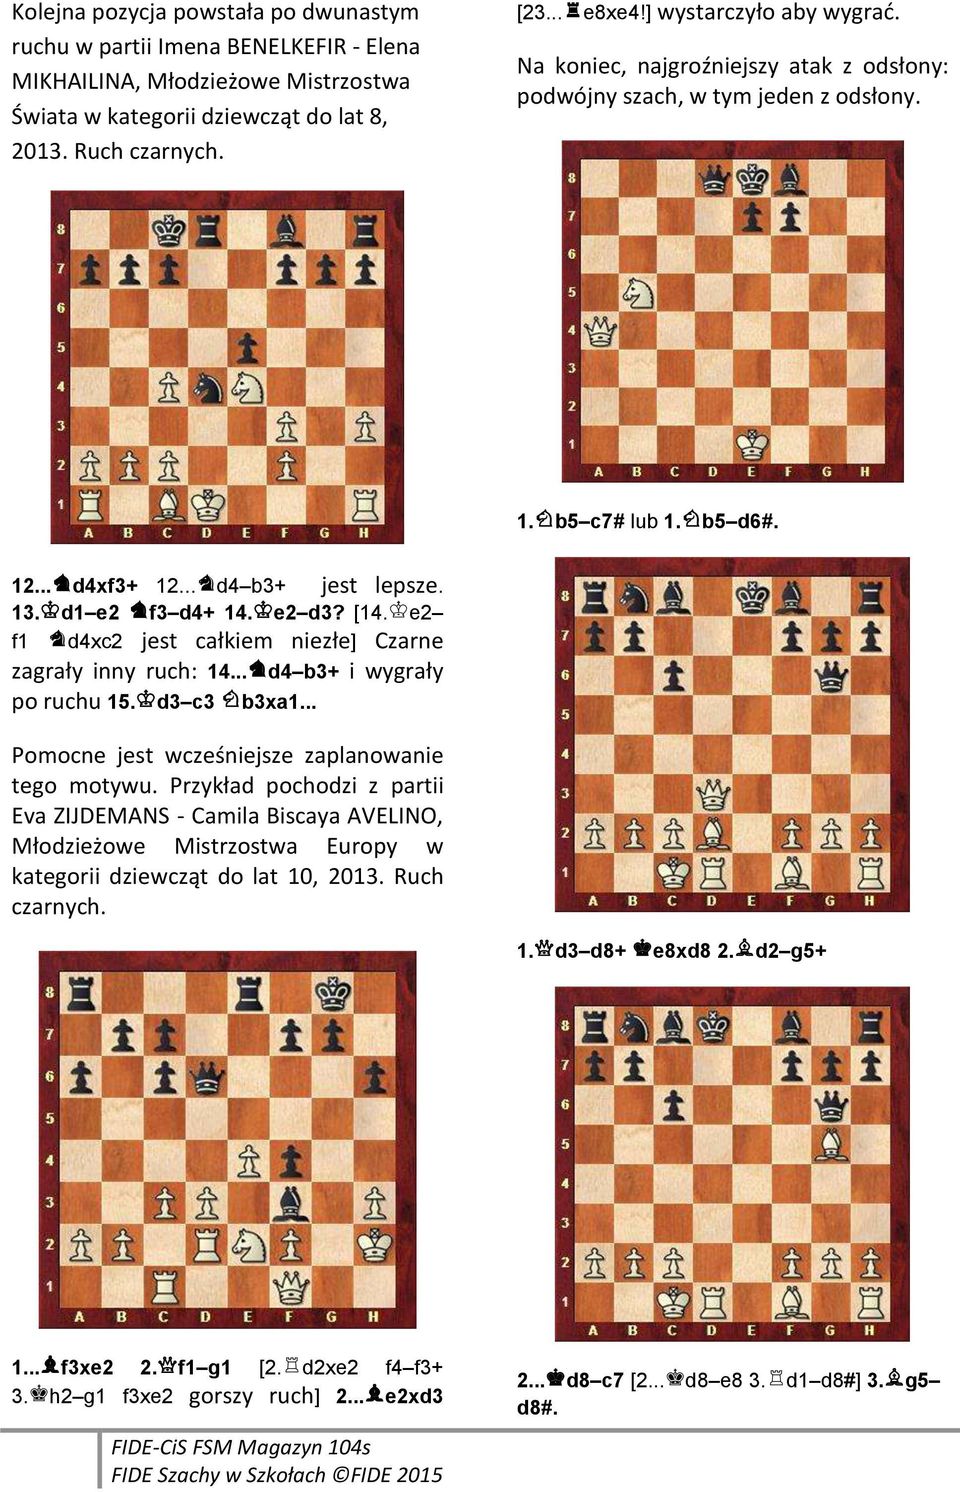 [14.ke2 f1 jd4xc2 jest całkiem niezłe] Czarne zagrały inny ruch: 14...jd4 b3+ i wygrały po ruchu 15.kd3 c3 hb3xa1... Pomocne jest wcześniejsze zaplanowanie tego motywu.